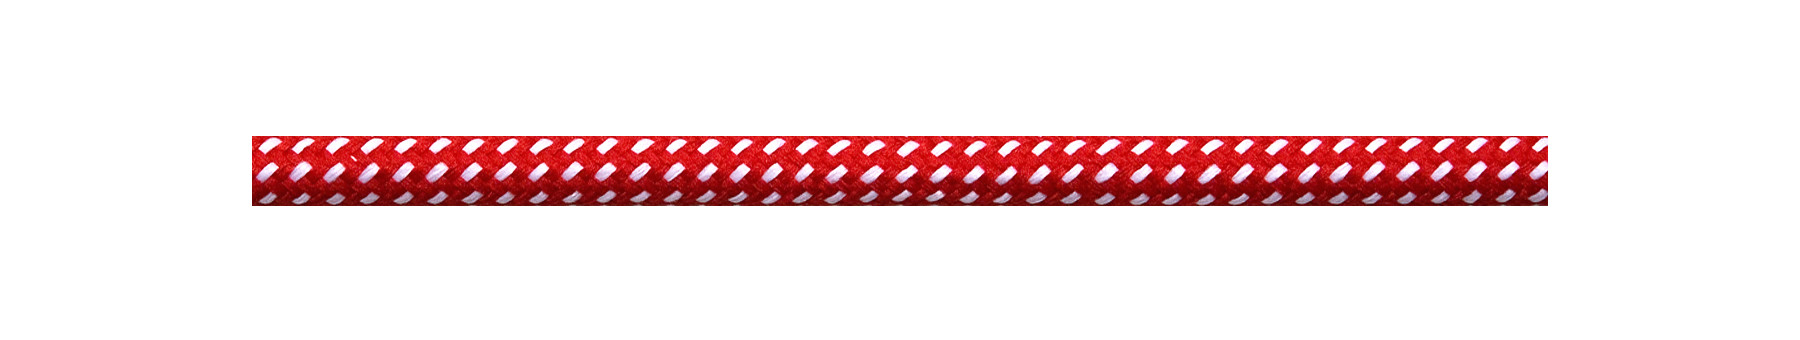 Textilkabel Rot-Weiß Gepunktet